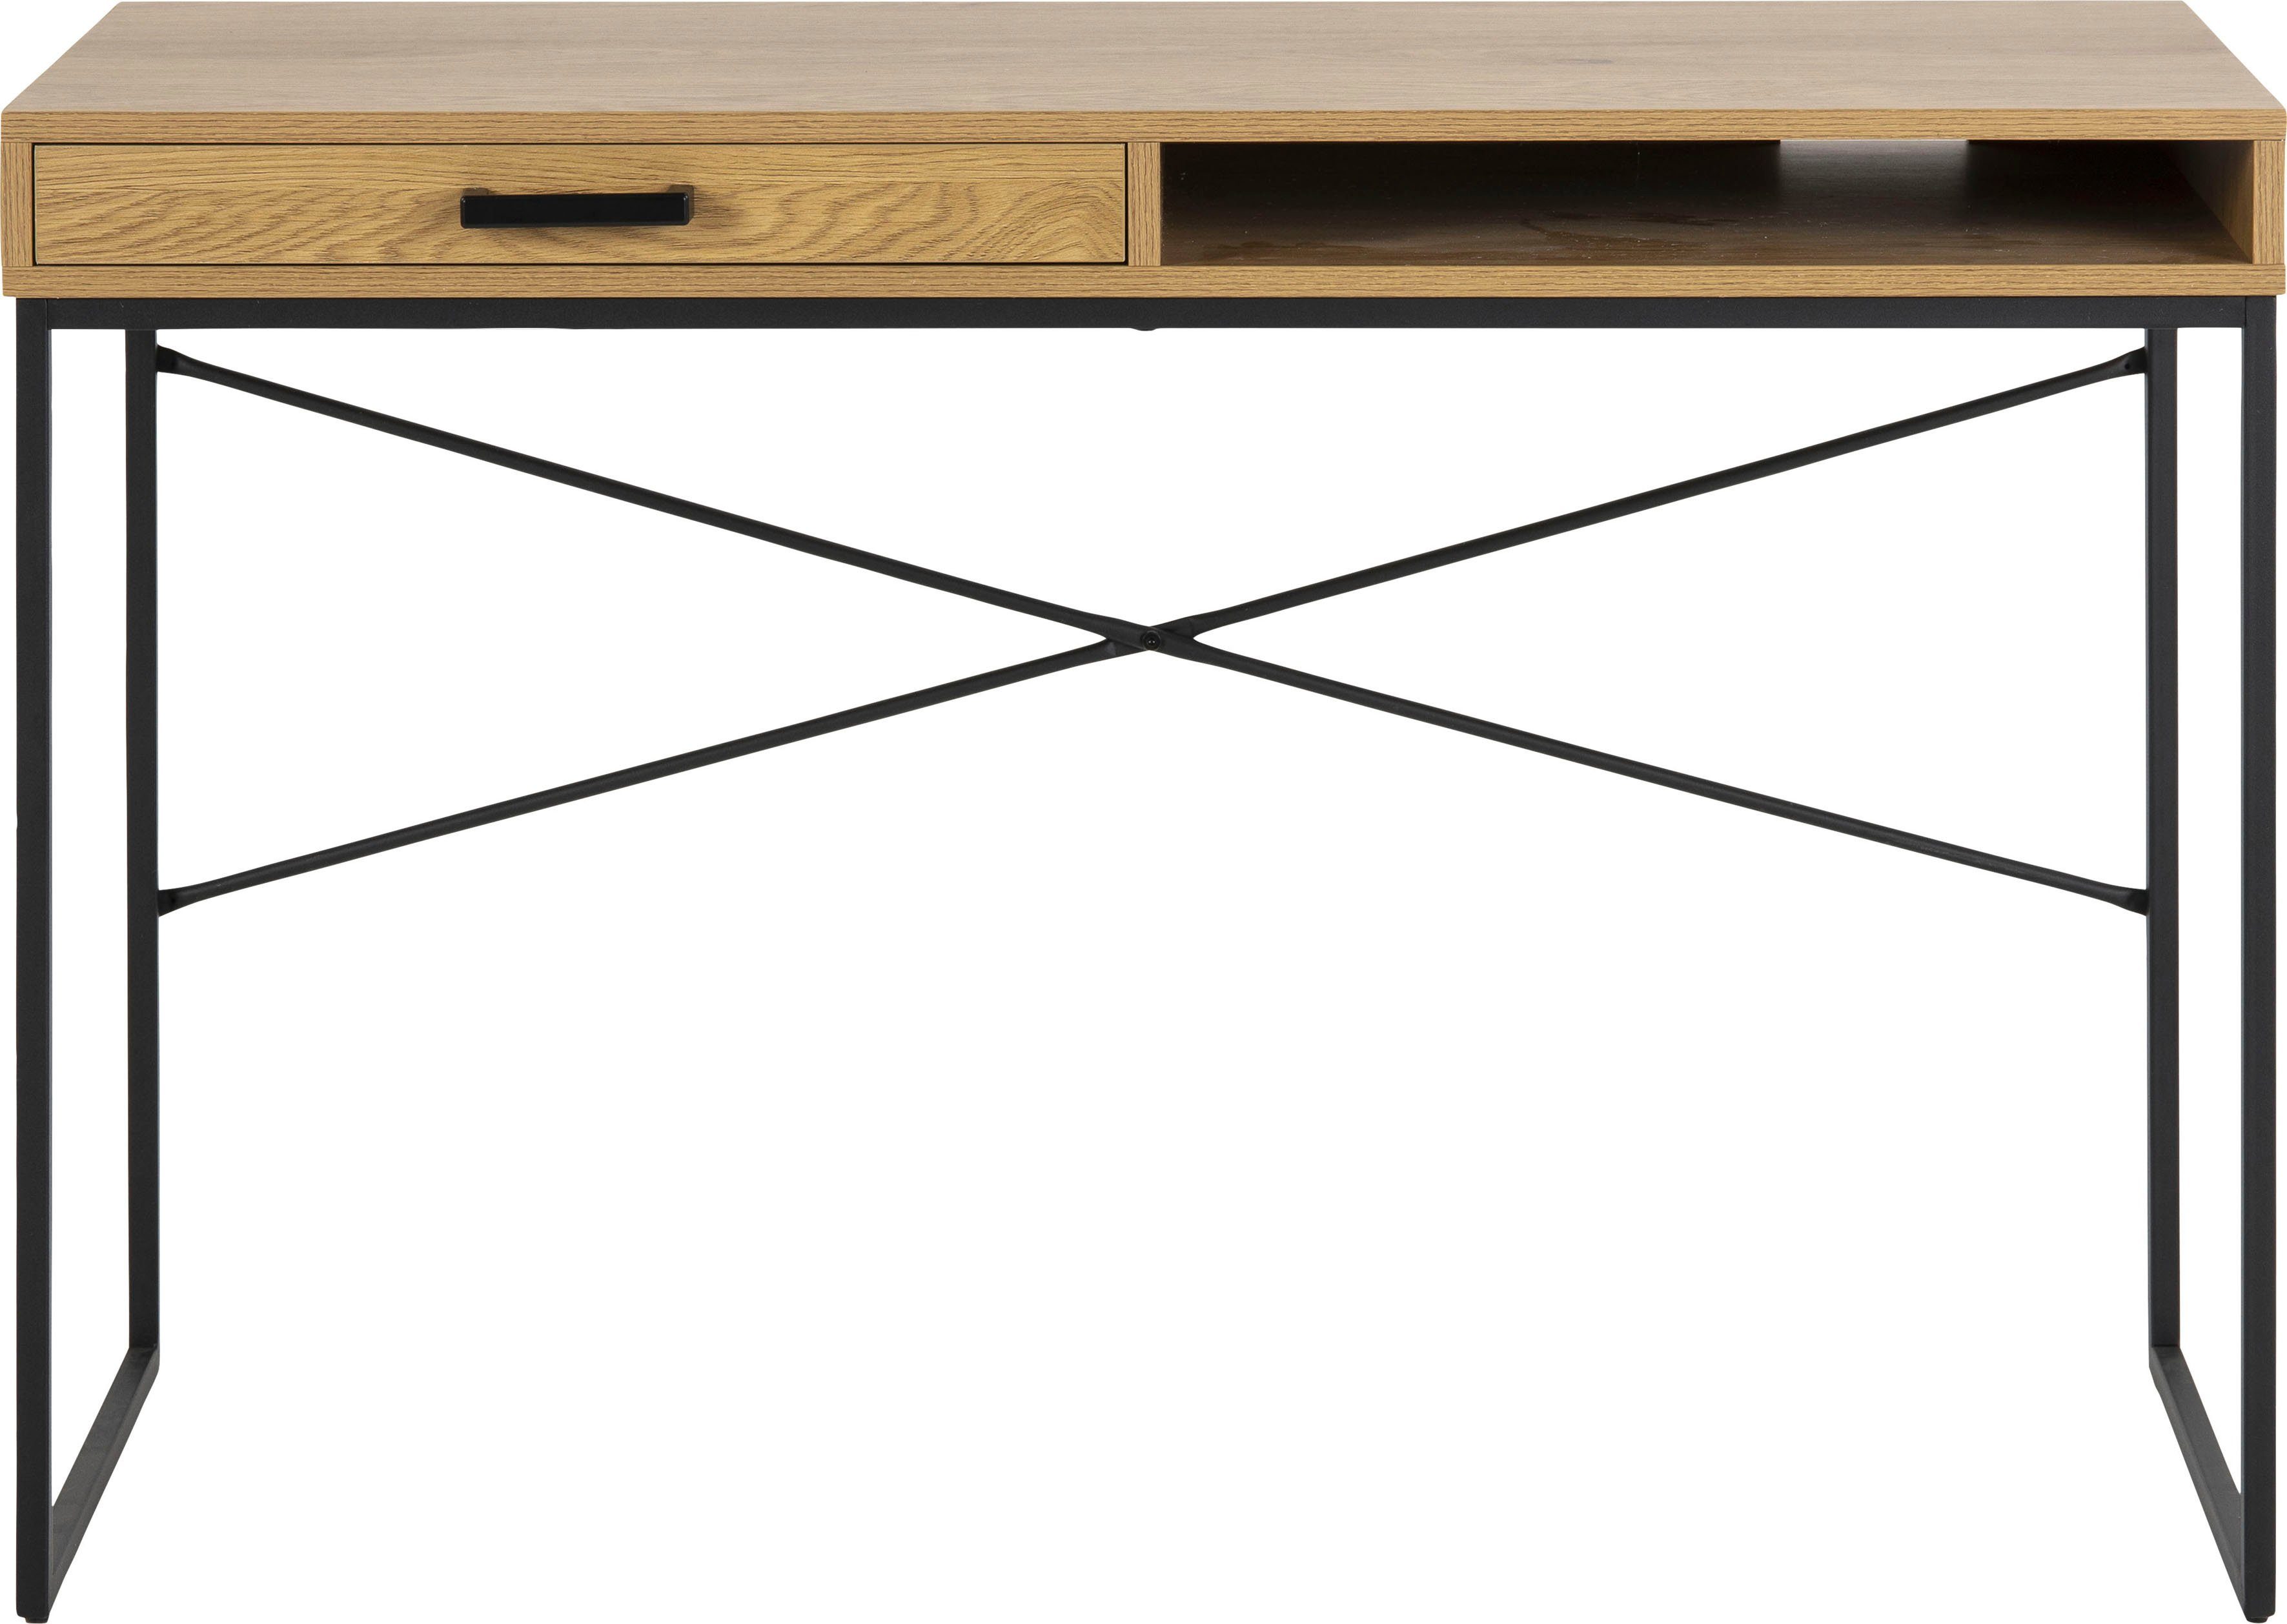 ACTONA GROUP Schreibtisch, Metallgestell, 1 Schublade und 1 offenem Fach, Breite 140 cm